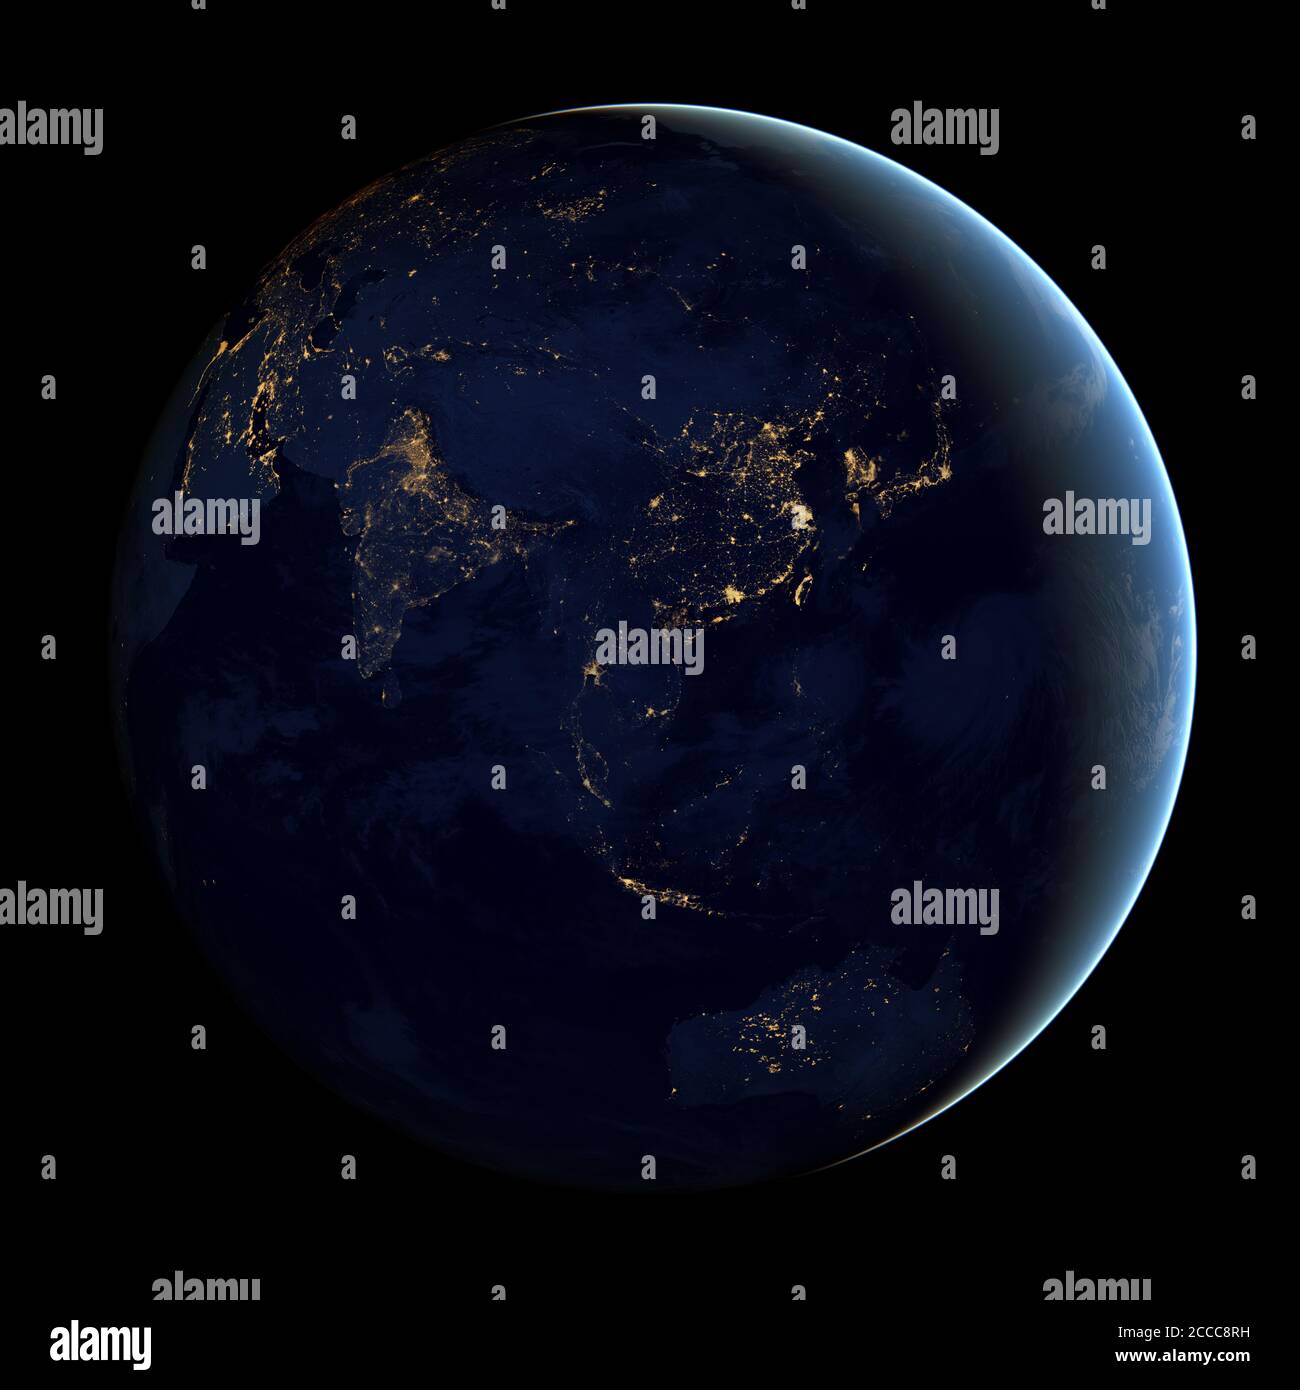 Dieses zusammengesetzte Bild - aus NASA-Satellitendaten - zeigt die fernöstliche Hemisphäre der Erde bei Nacht - Foto: Geopix/NASA/Alamy Stock Photo Stockfoto